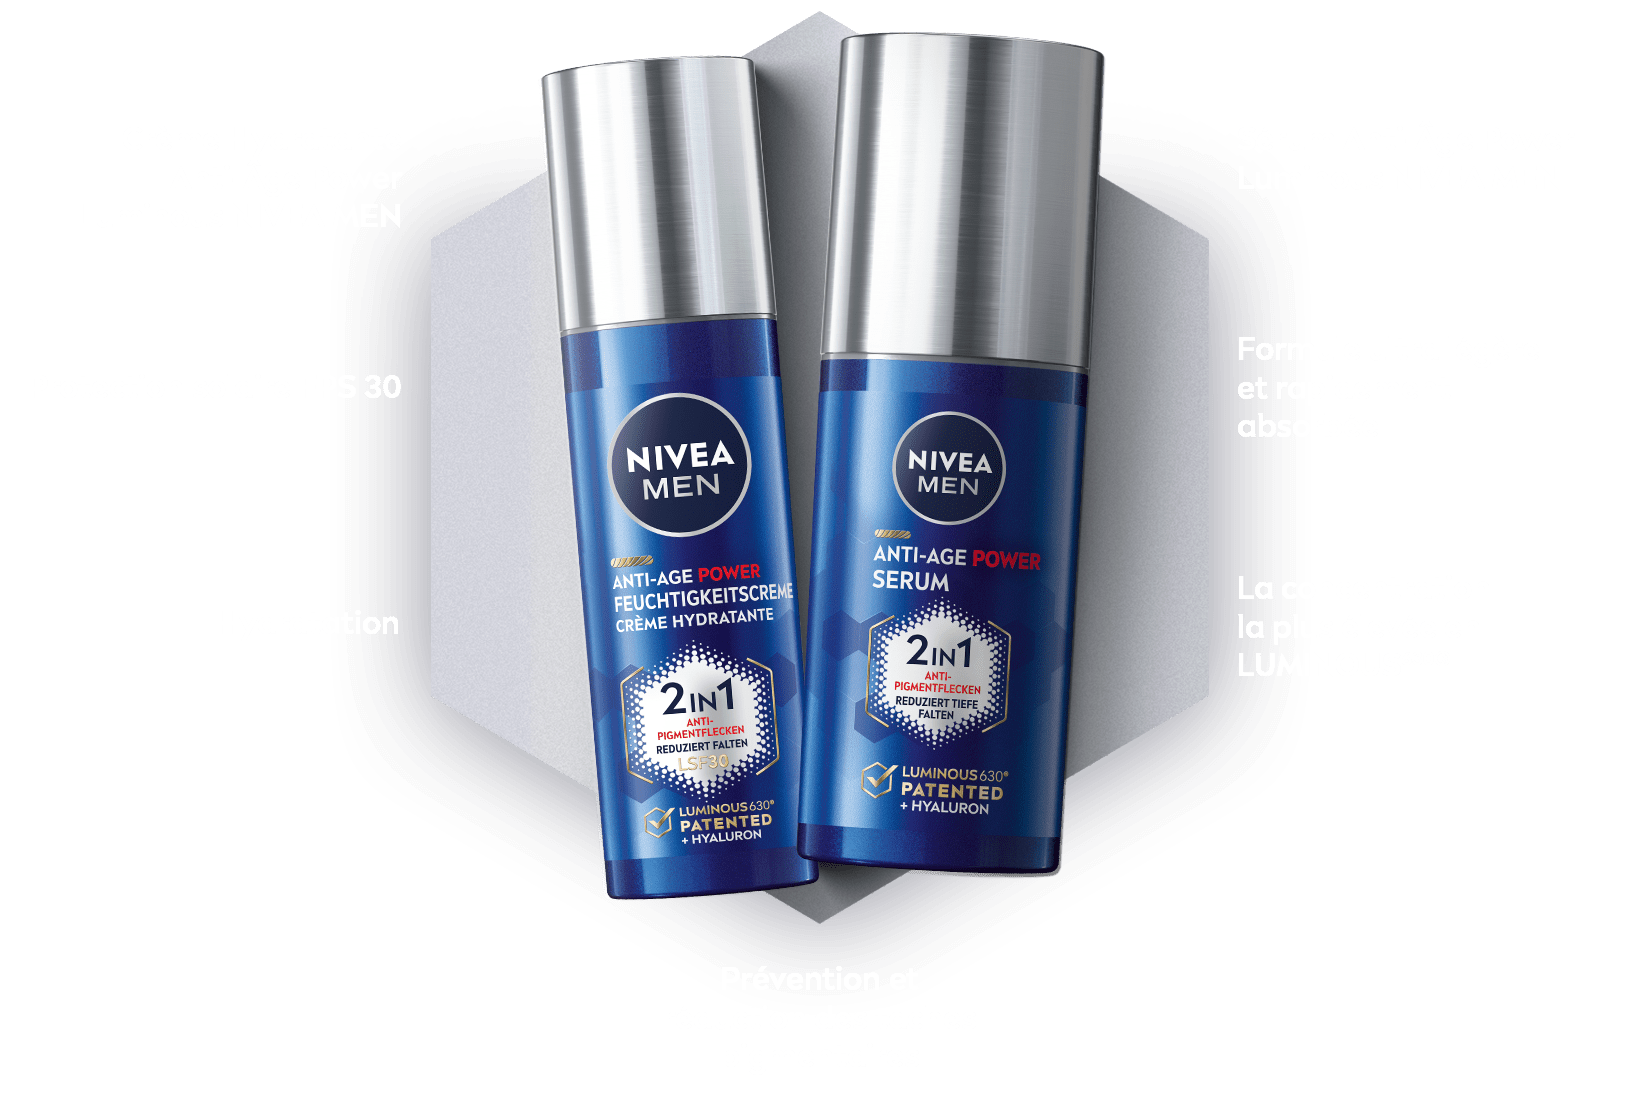 La Crème Hydratante Anti-Âge Power Luminous NIVEA MEN et le Sérum Anti-Âge Power Luminous NIVEA MEN